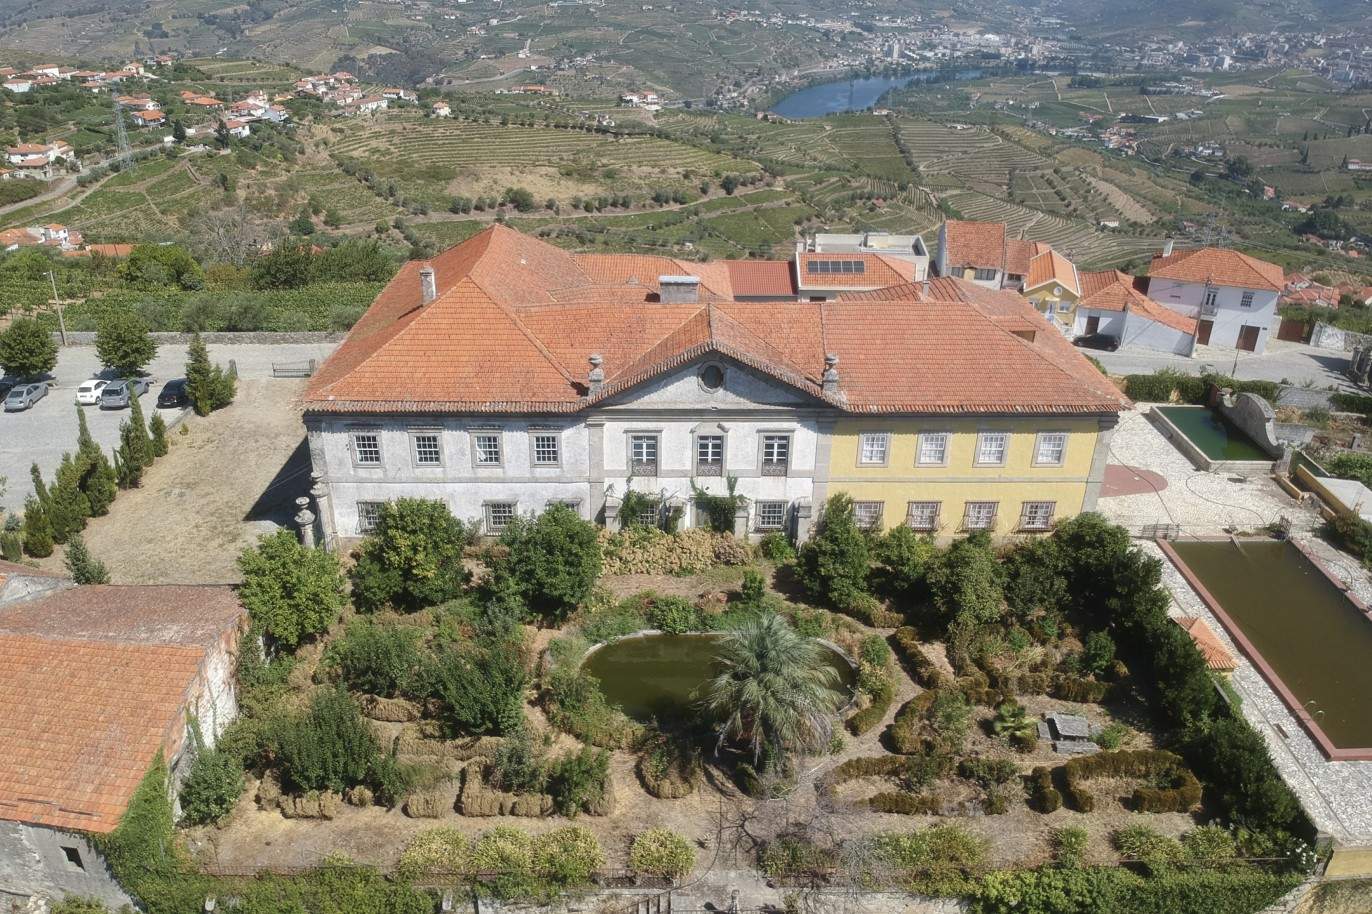 Venda: Palacete para restaurar com jardins, Lamego, Alto Douro _207354